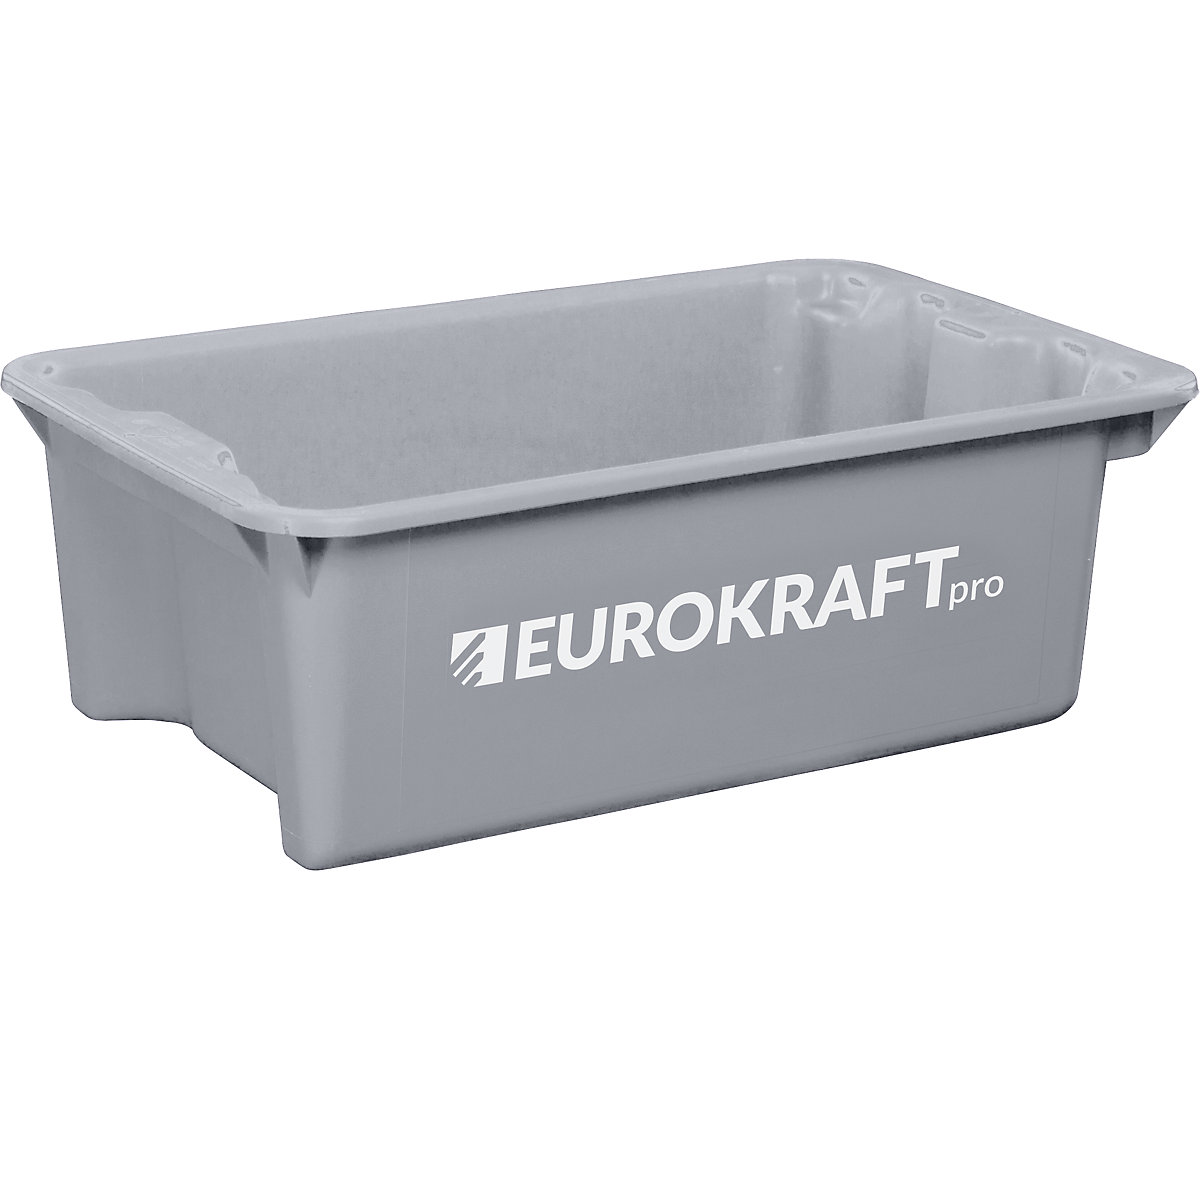 EUROKRAFTpro – Otočná stohovací nádoba z polypropylenu vhodného pro potraviny, obsah 34 litrů, bal.j. 3 ks, stěny a dno plné, šedá